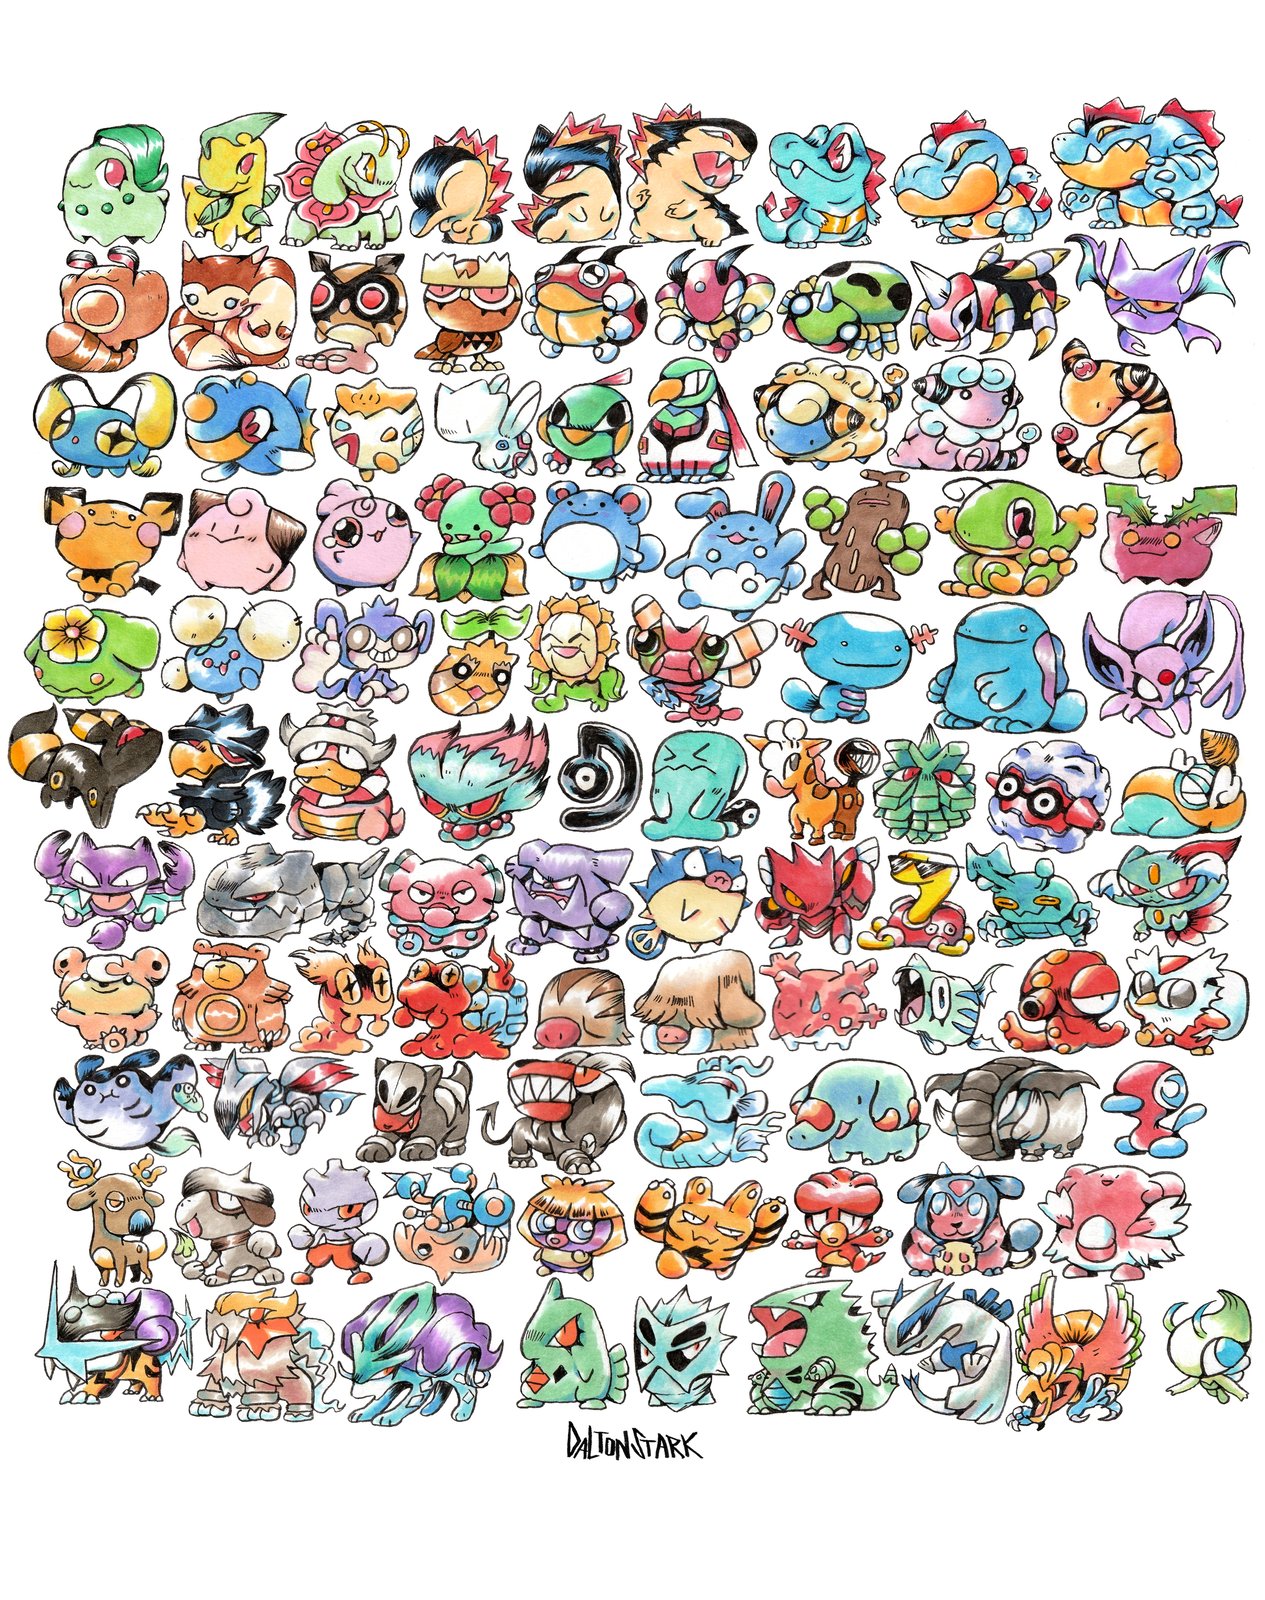 pokemon posters to print